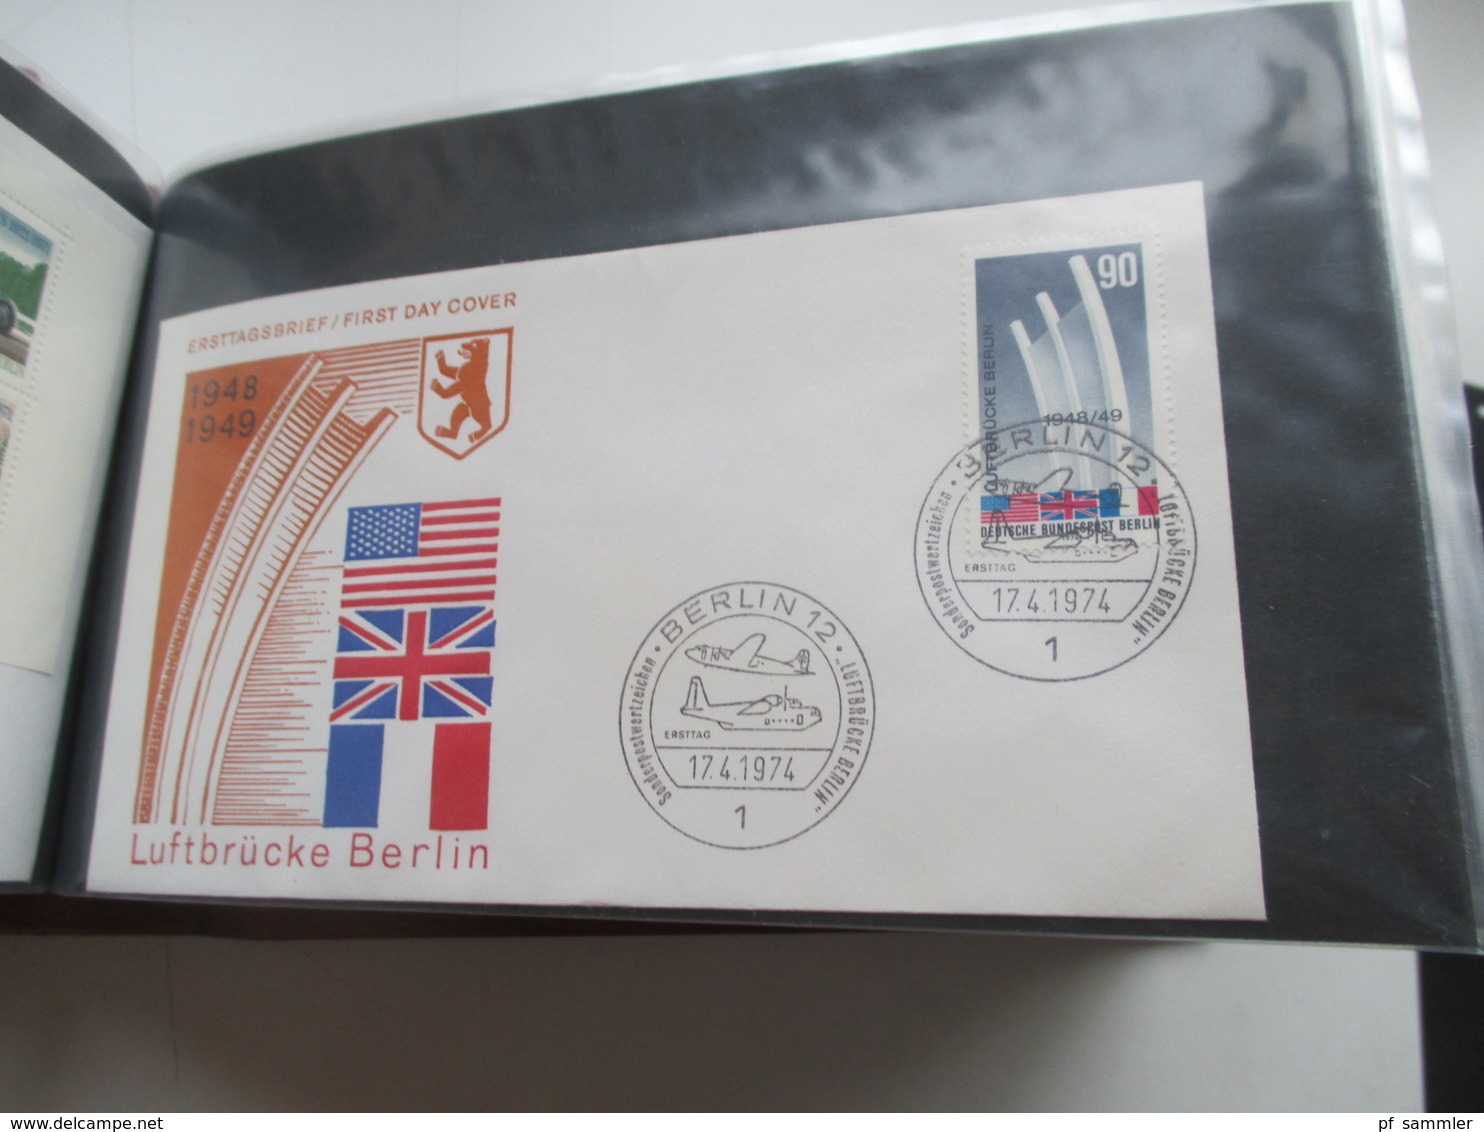 Berlin 1955 - 80 FDC / SST / Sonderbelege in 2 dicken Briefalben! Mit gutem FDC Berliner Stadtbilder alleine schon 200€